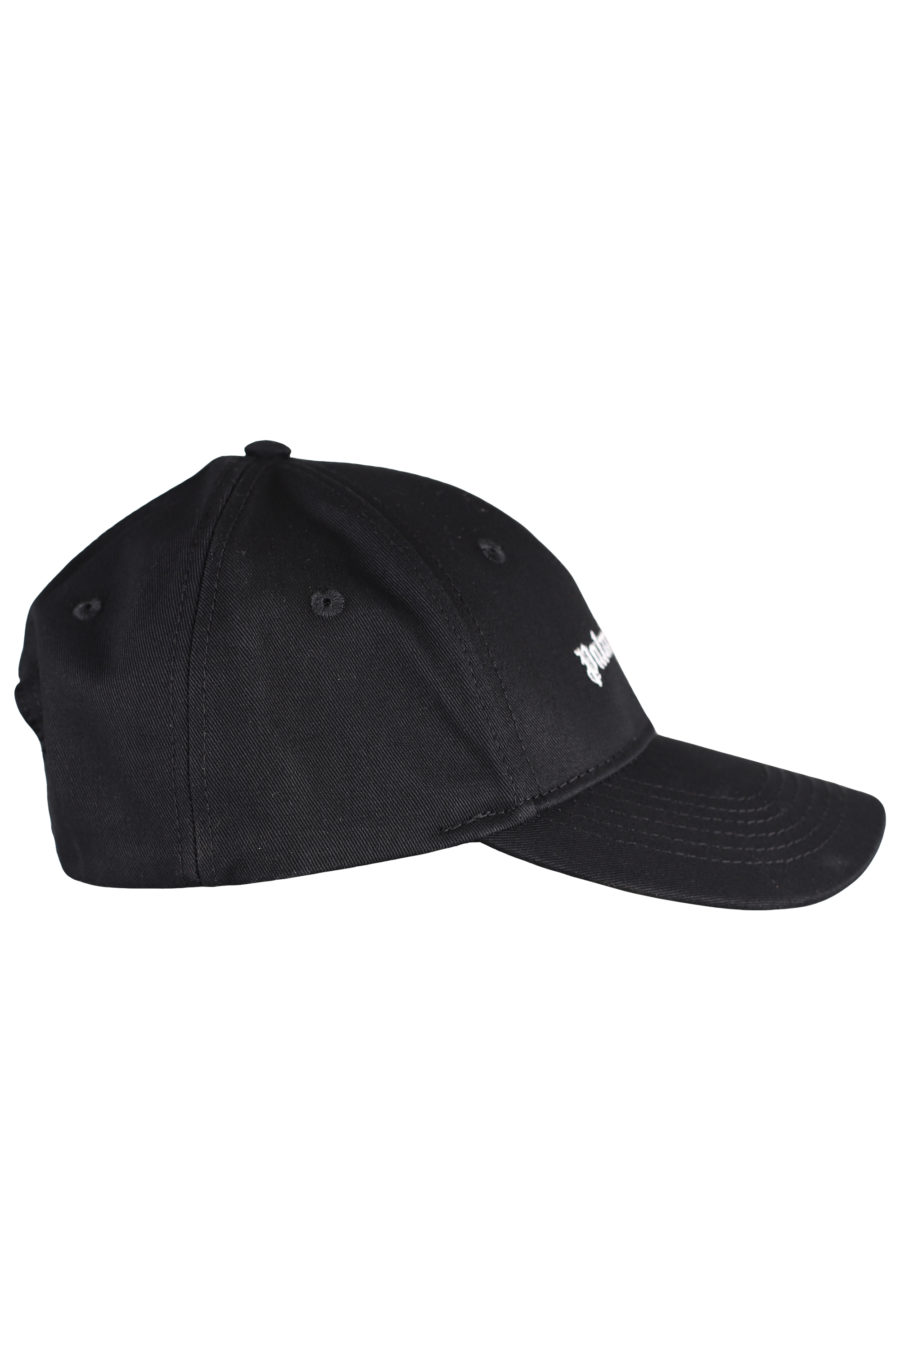 Gorra negra con logo en blanco - IMG 7285